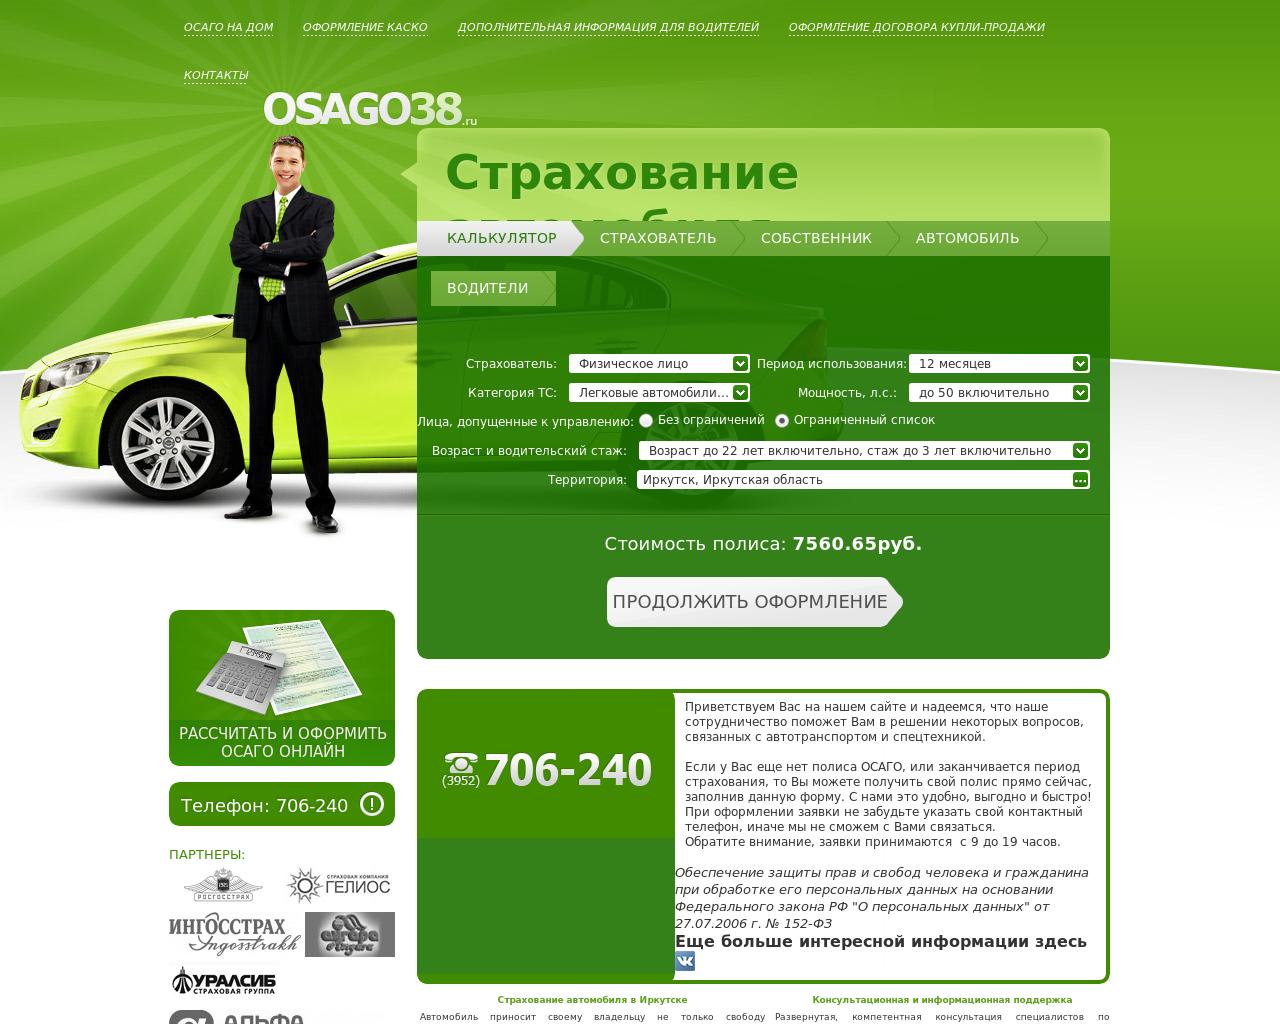 Изображение сайта osago38.ru в разрешении 1280x1024